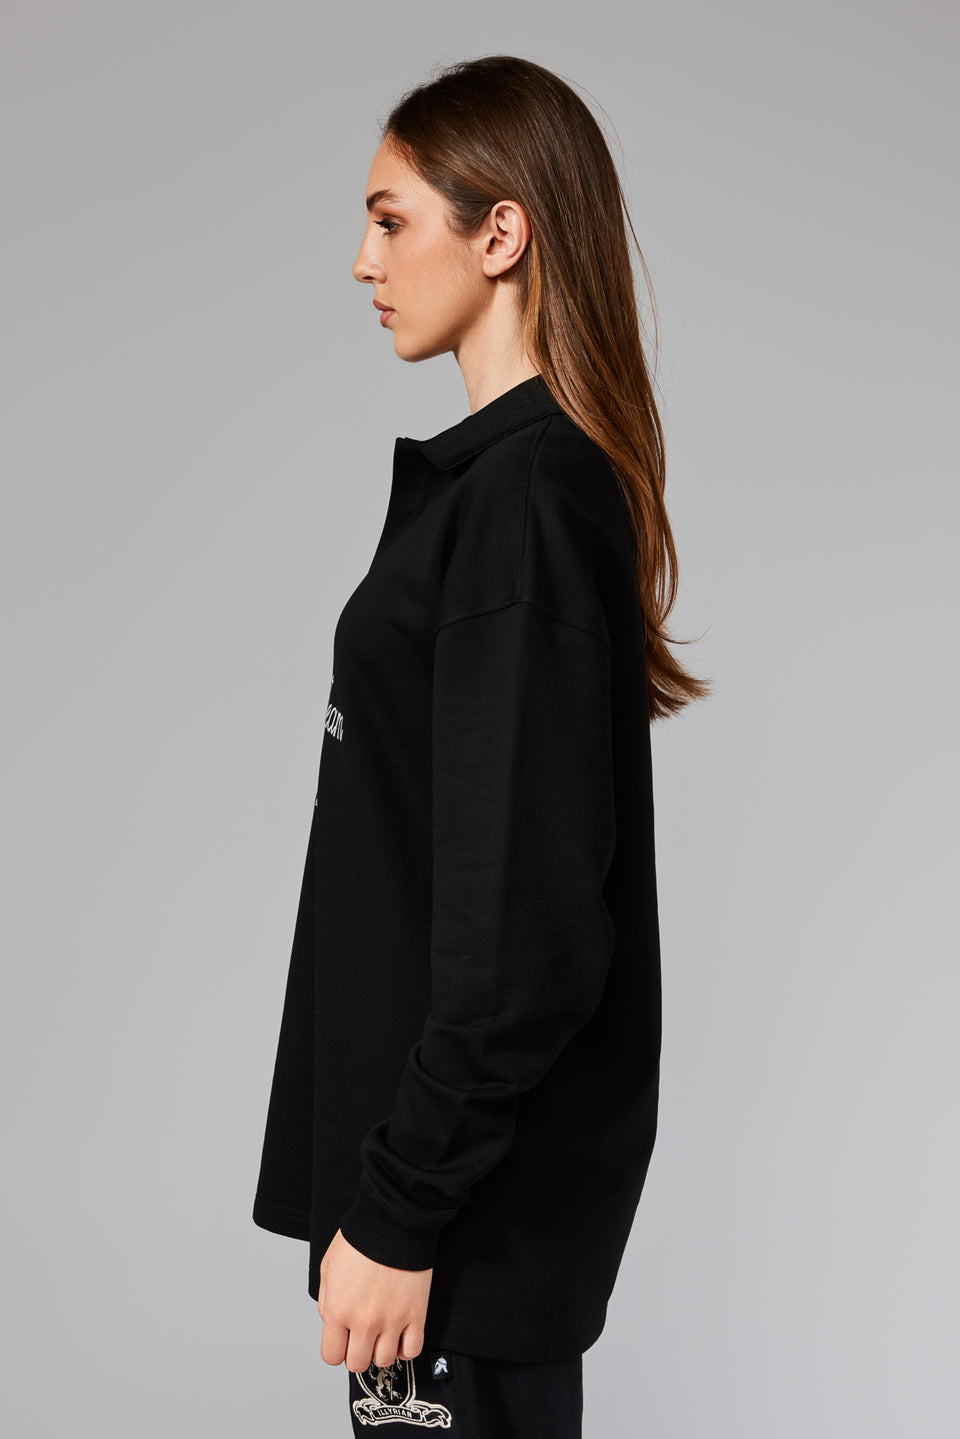 ILRN Buttoned Sweater - Black